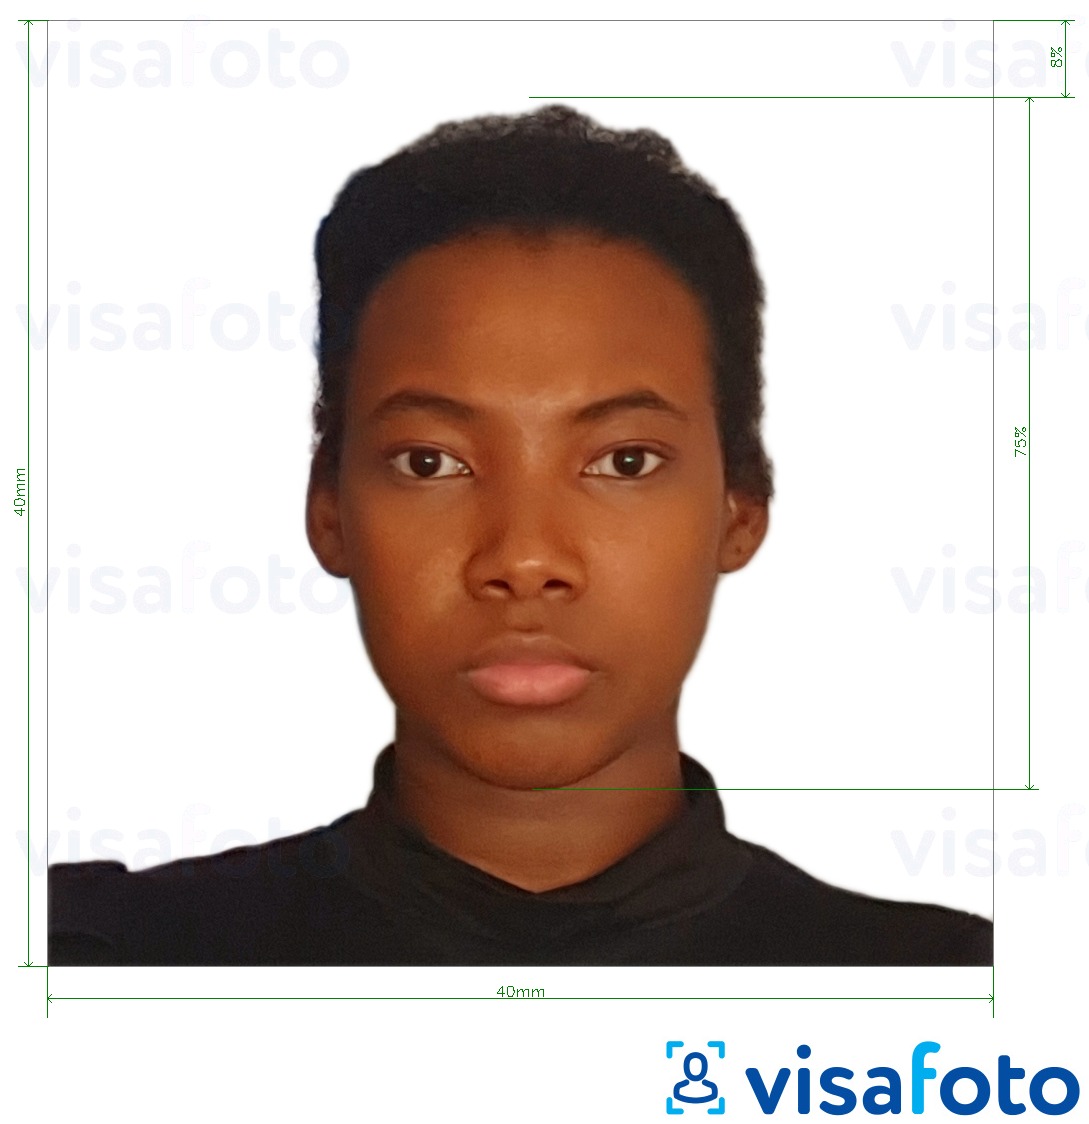 Primjer fotografije za Kamerunska viza 4x4 cm (40x40 mm) s točno određenom veličinom